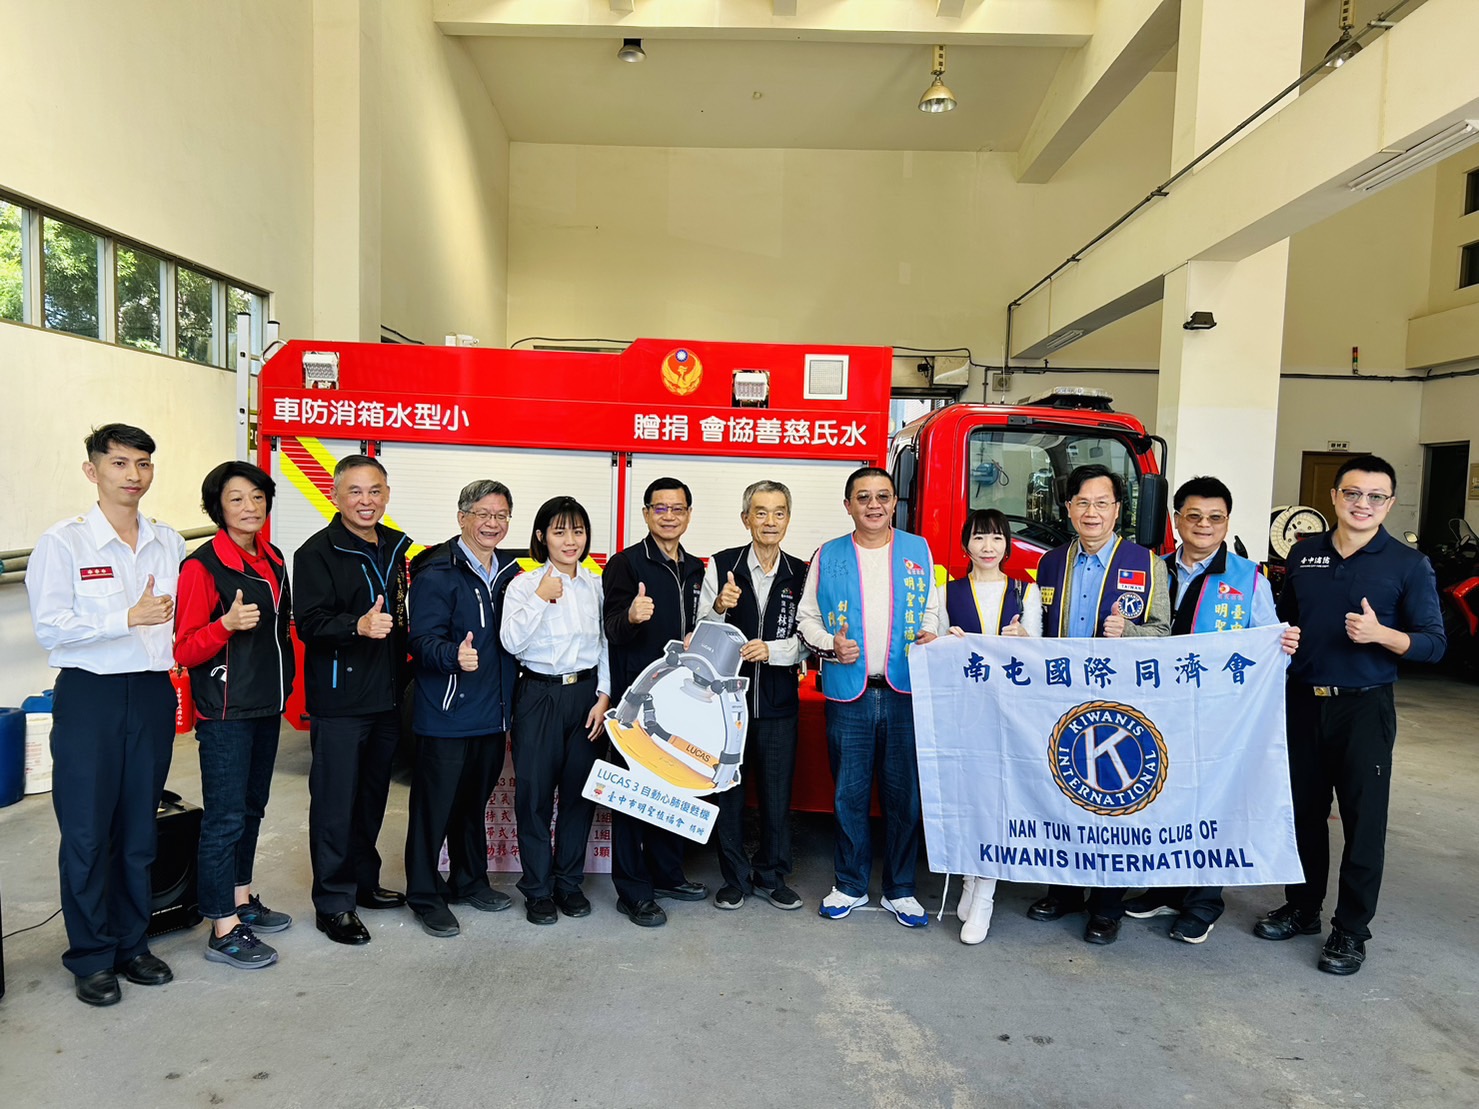 臺中市明聖植福會捐贈救護設備-今-18-日在東山消防分隊舉行捐贈儀式